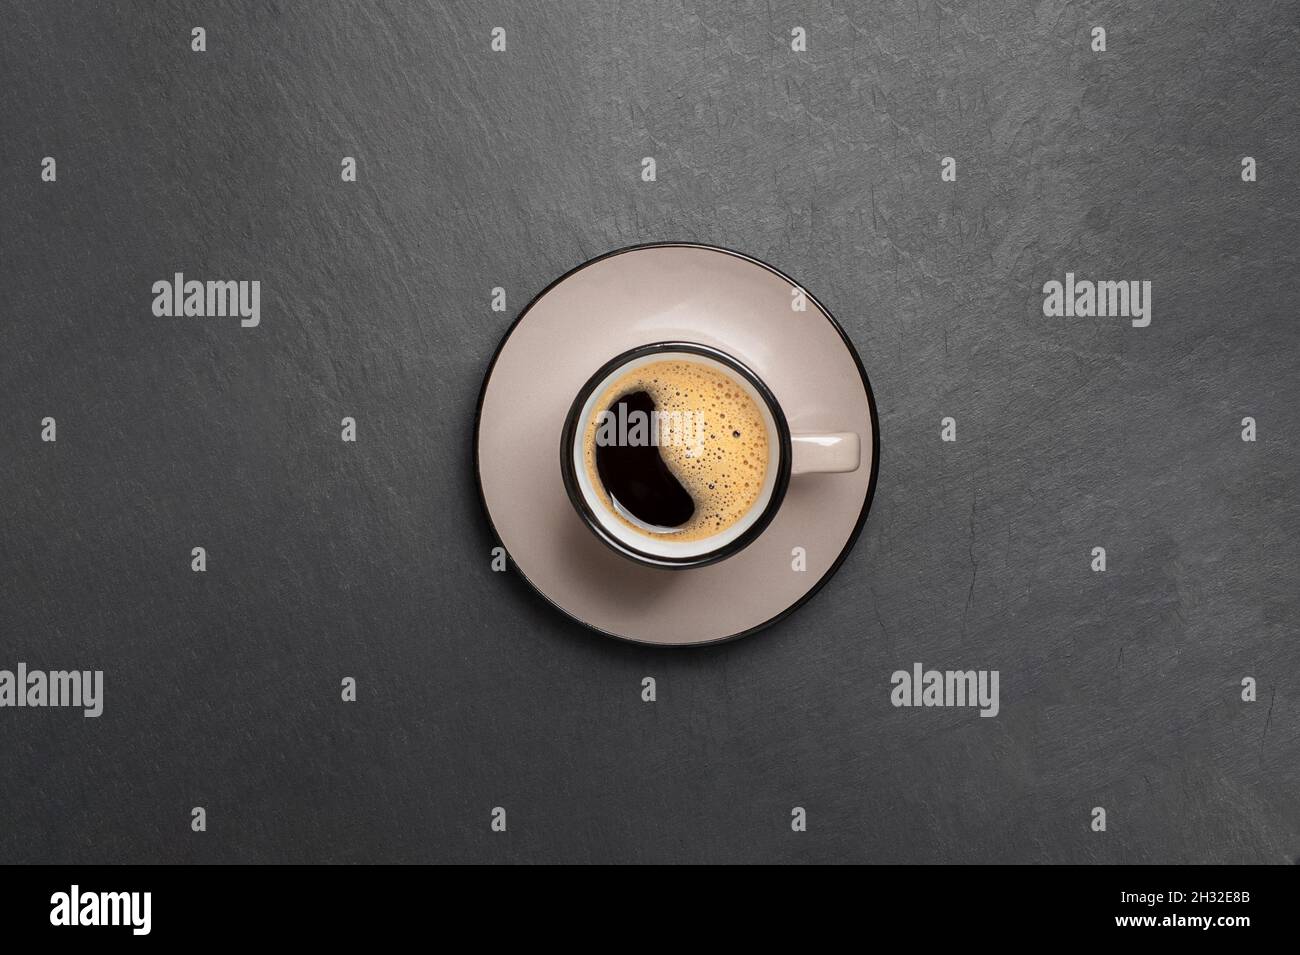 Eine Tasse Kaffee mit schönem Schaum in der Nähe Kaffeebohnen sind auf einem schwarzen Stein Hintergrund Draufsicht Kopierfläche verstreut Stockfoto